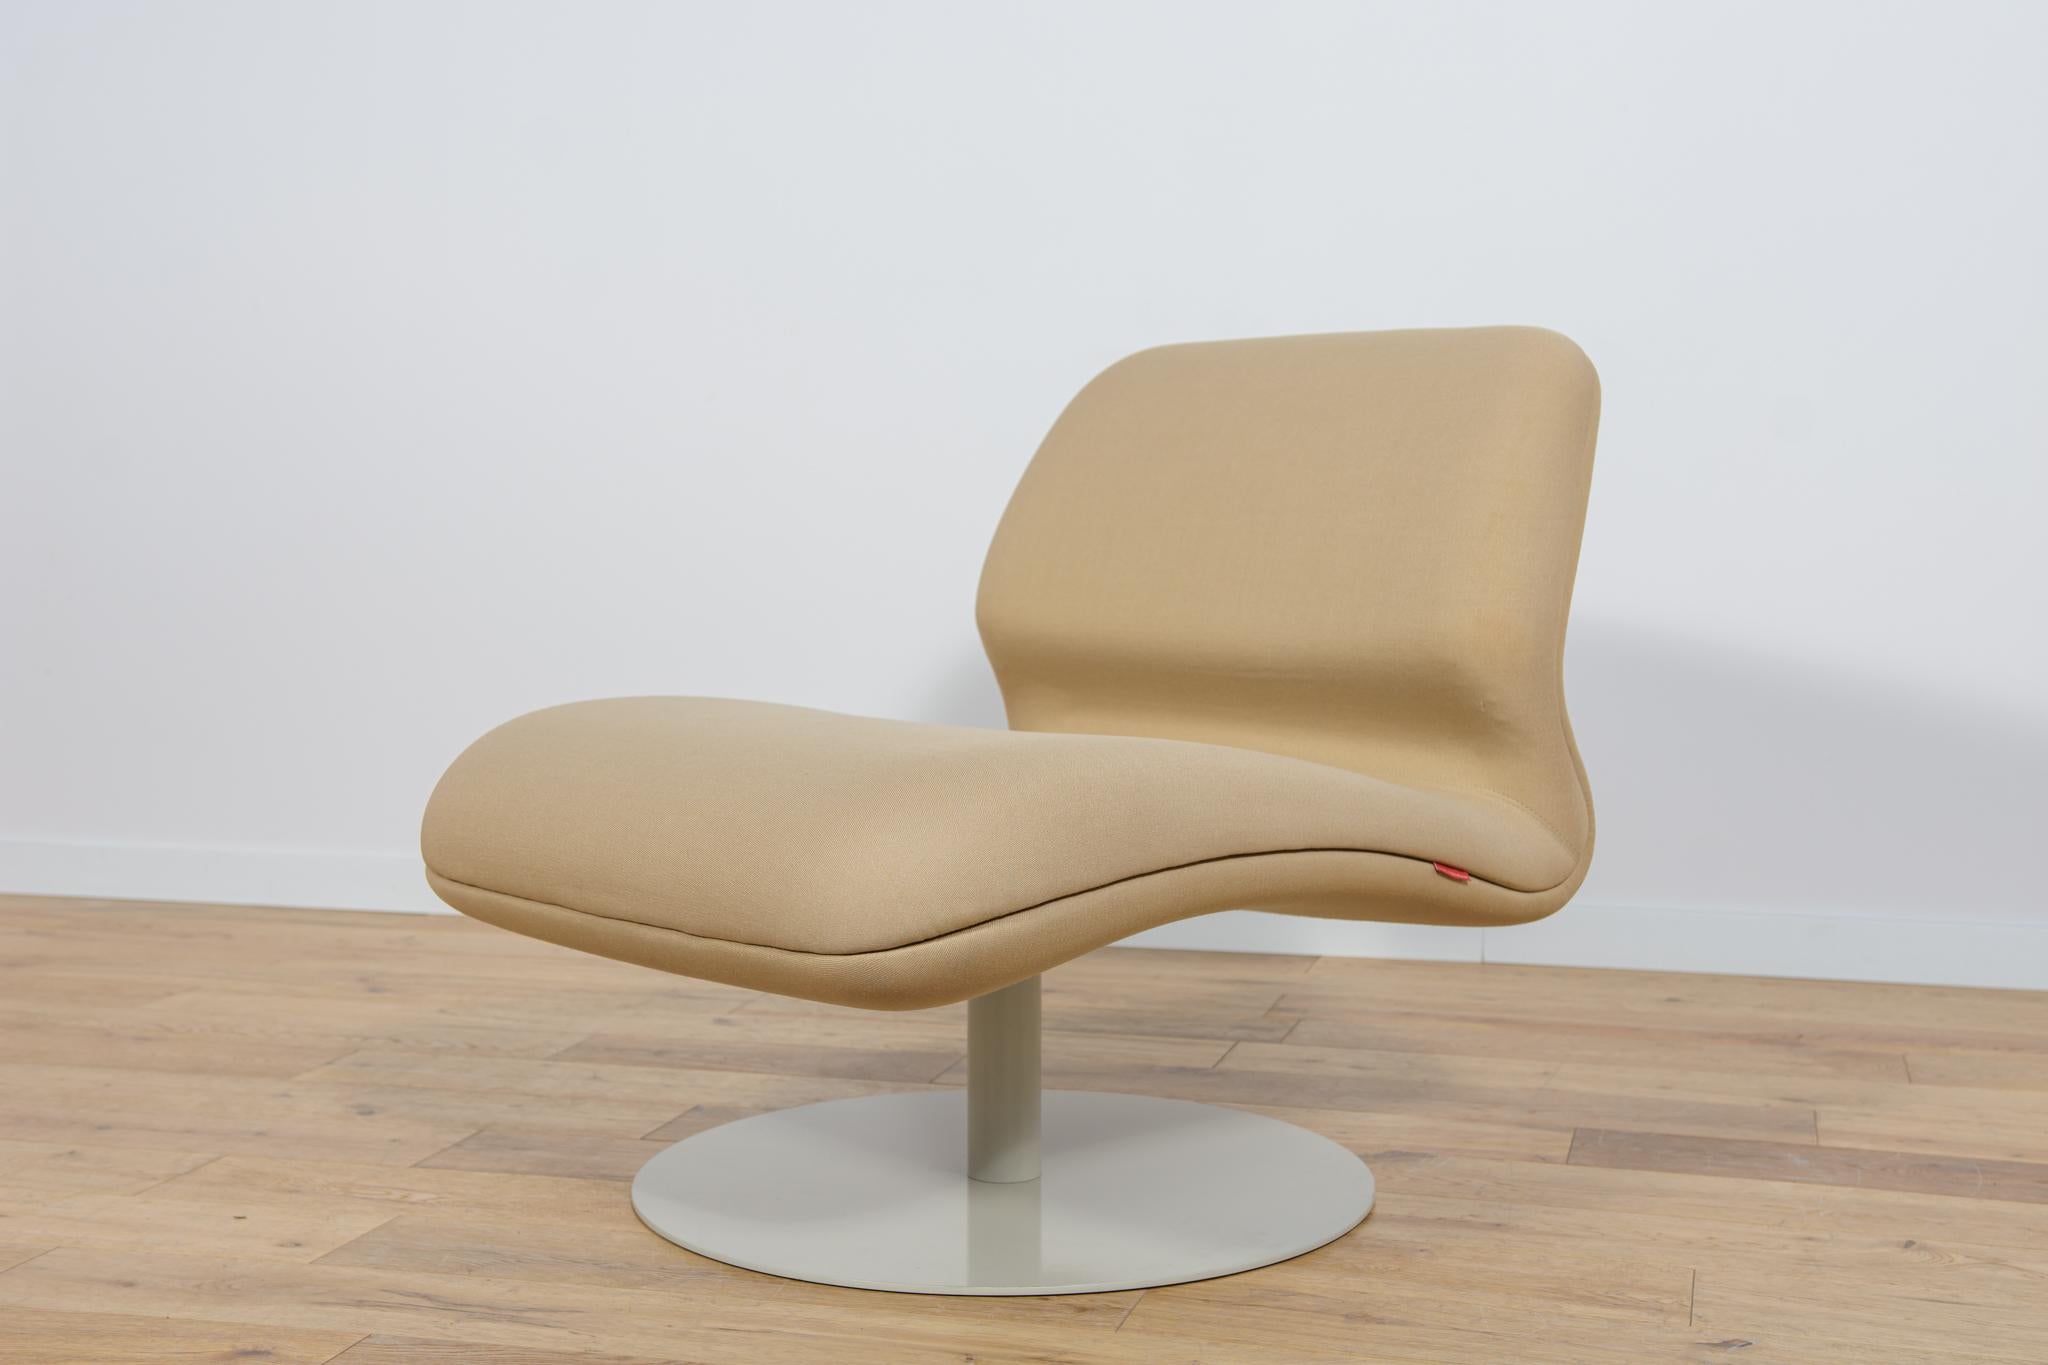 
Der Sessel MV10 von Morten Voss für die dänische Firma Fritz Hansen im ersten Jahrzehnt des 21. Jahrhunderts. Ein Möbelstück mit einer interessanten modernistischen Form. Der Sessel ist im Originalzustand. Der Sessel Modell MV10 wurde gereinigt und